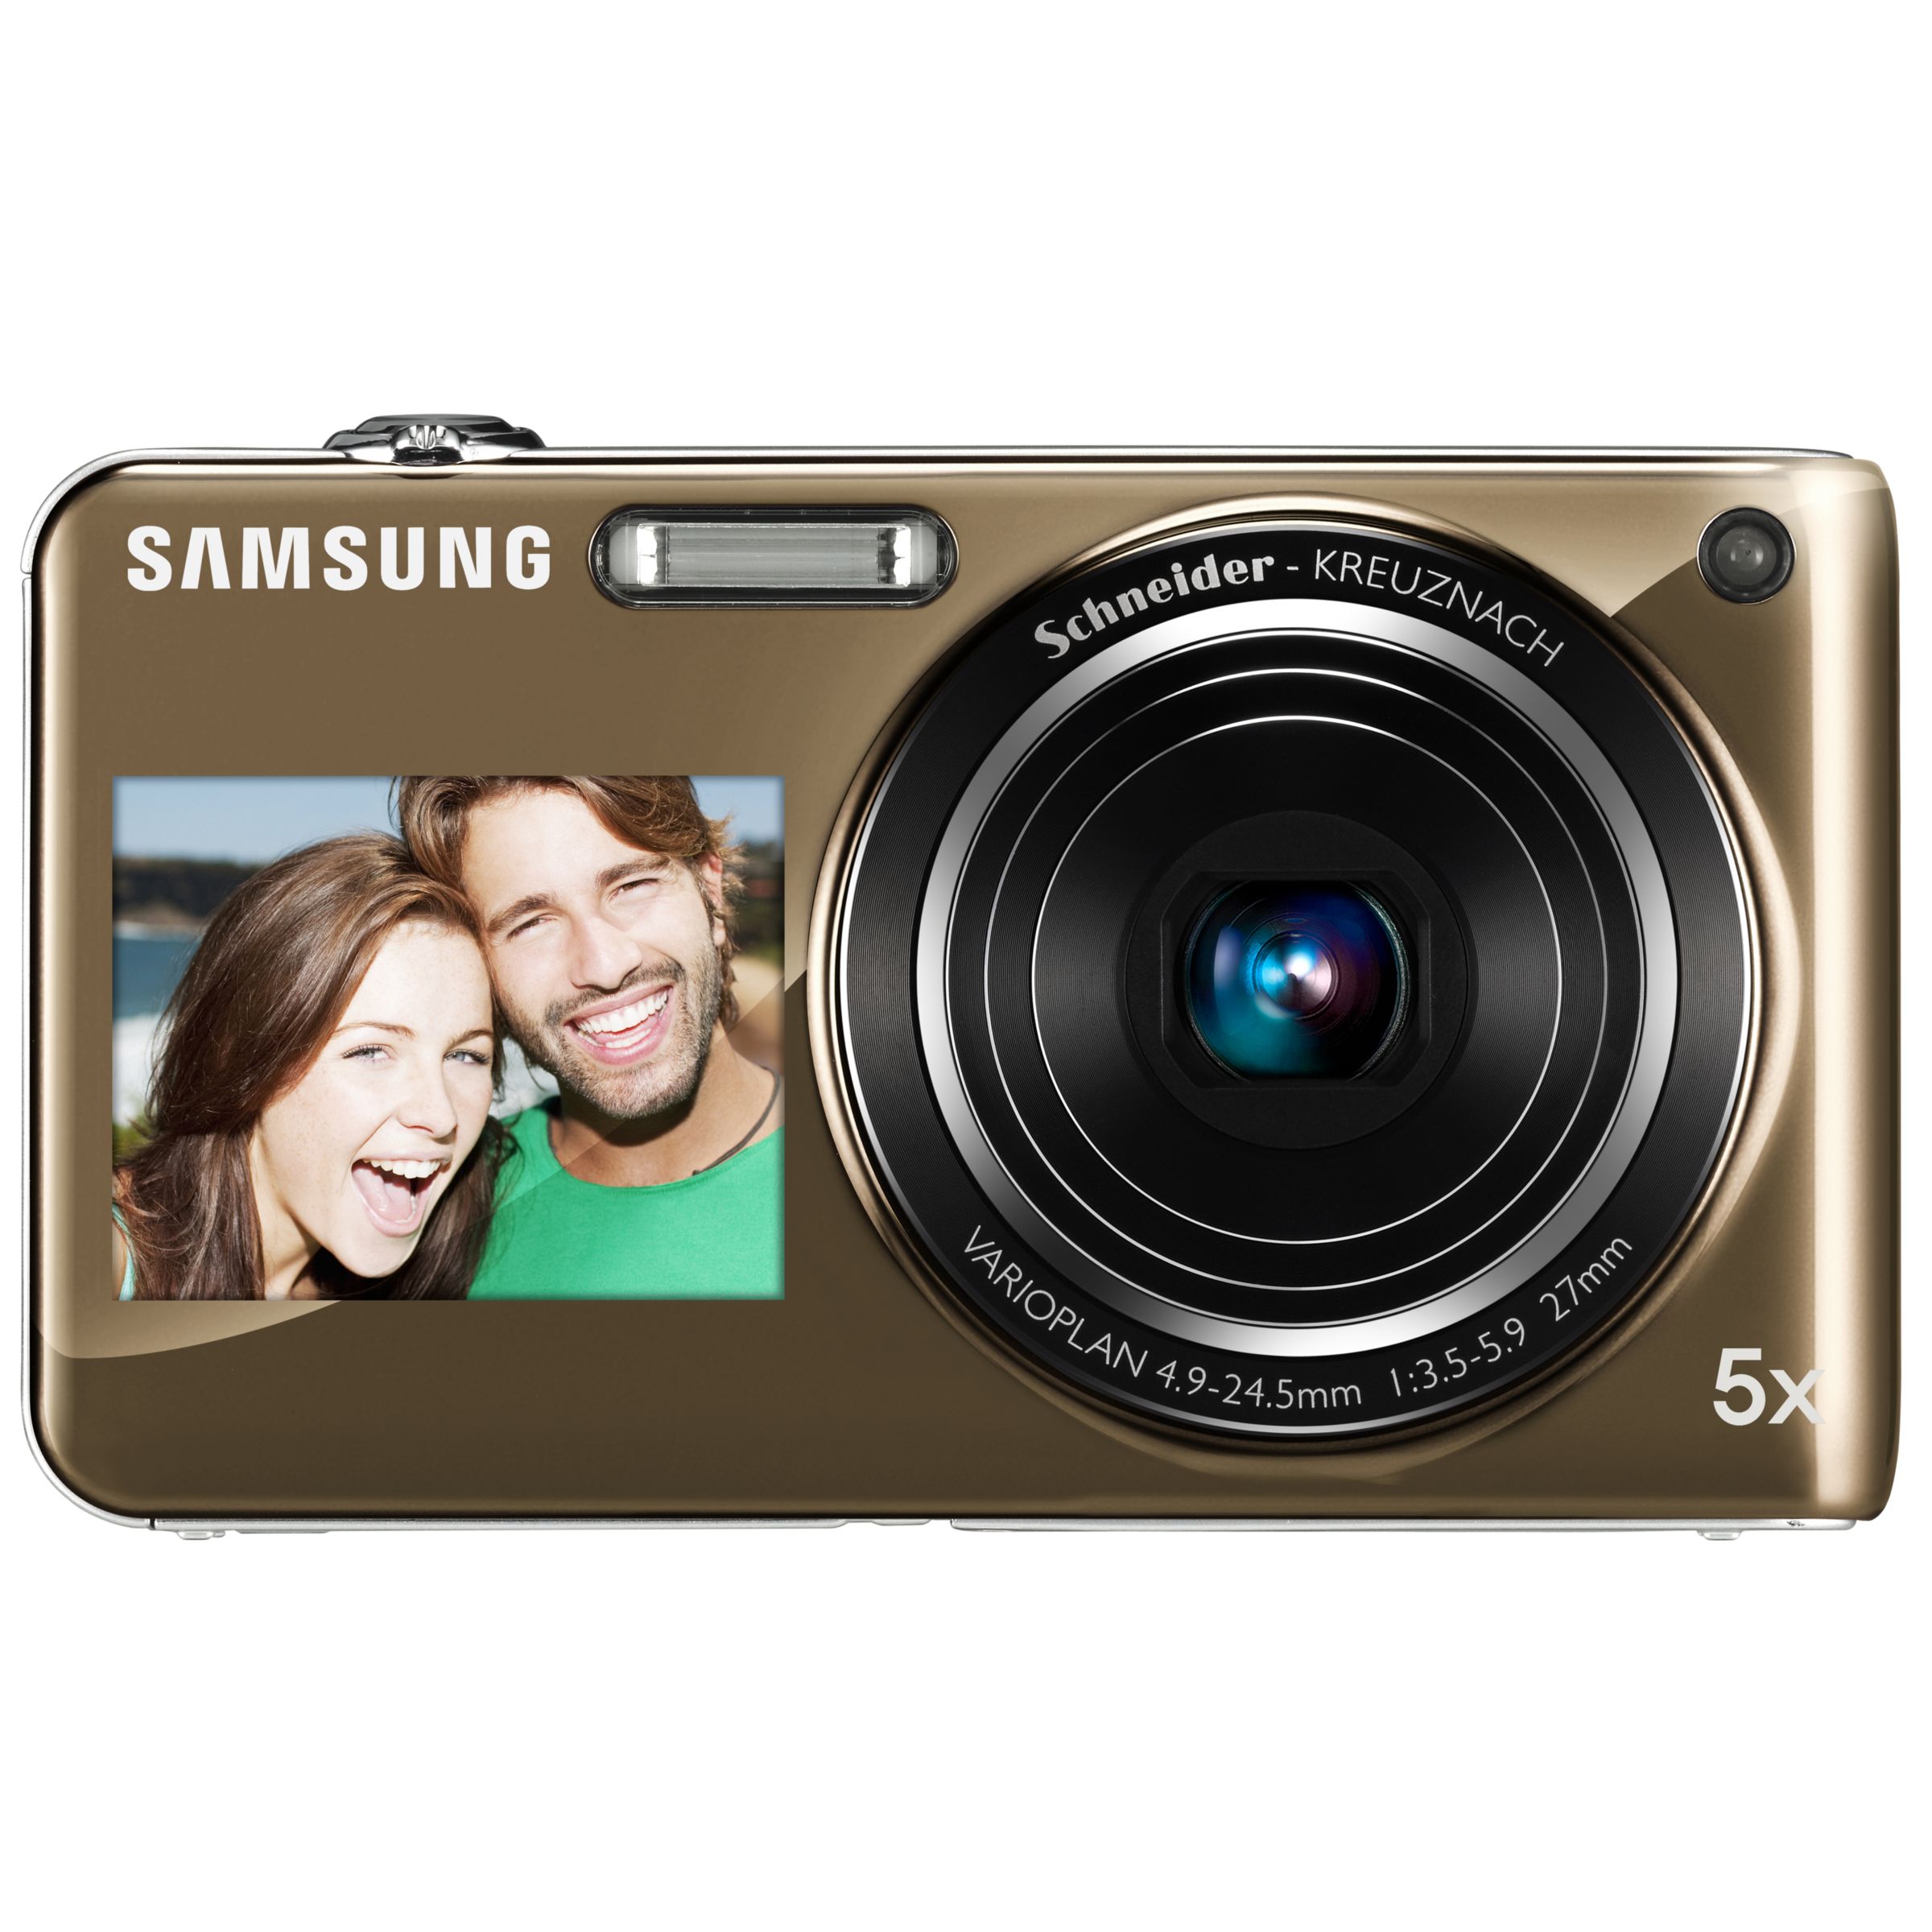 Samsung ST600 Dual Screen Digital Camera, Platinum at John Lewis